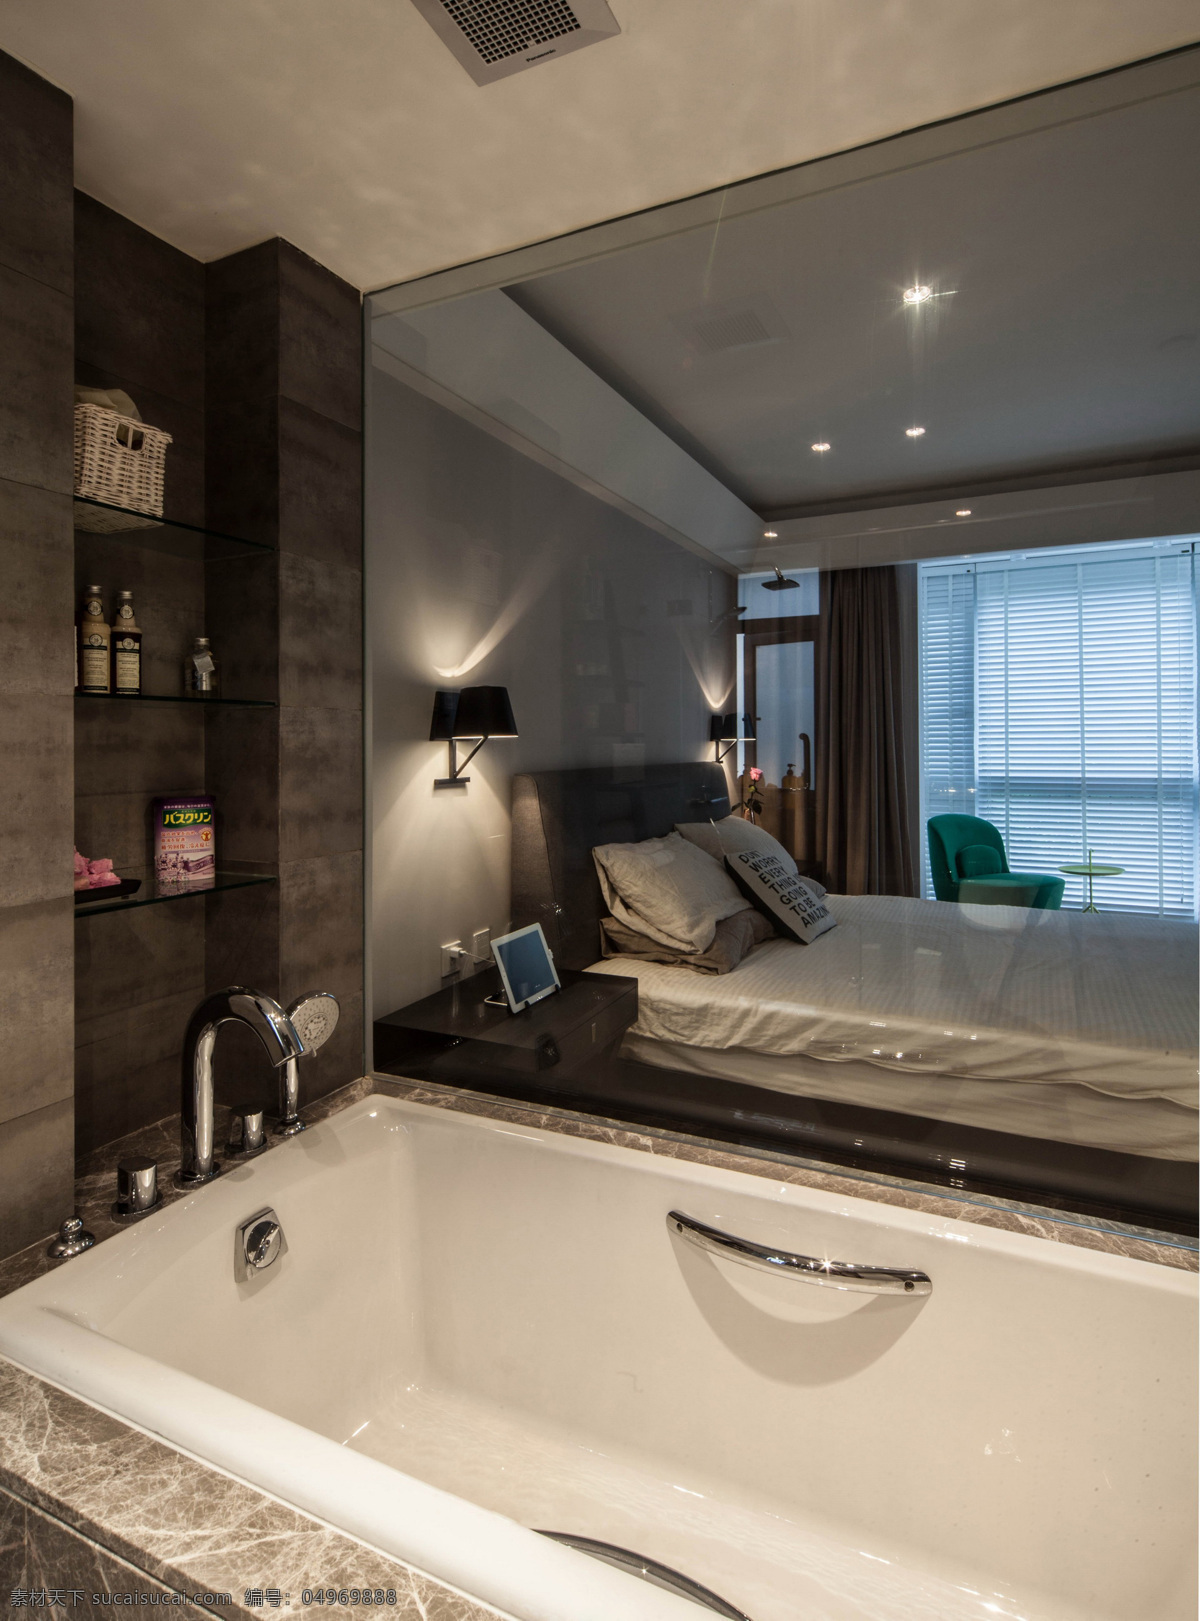 现代 时尚 卧室 浴缸 室内装修 效果图 卧室装修 深褐色背景墙 黑色壁灯 灰色背景墙